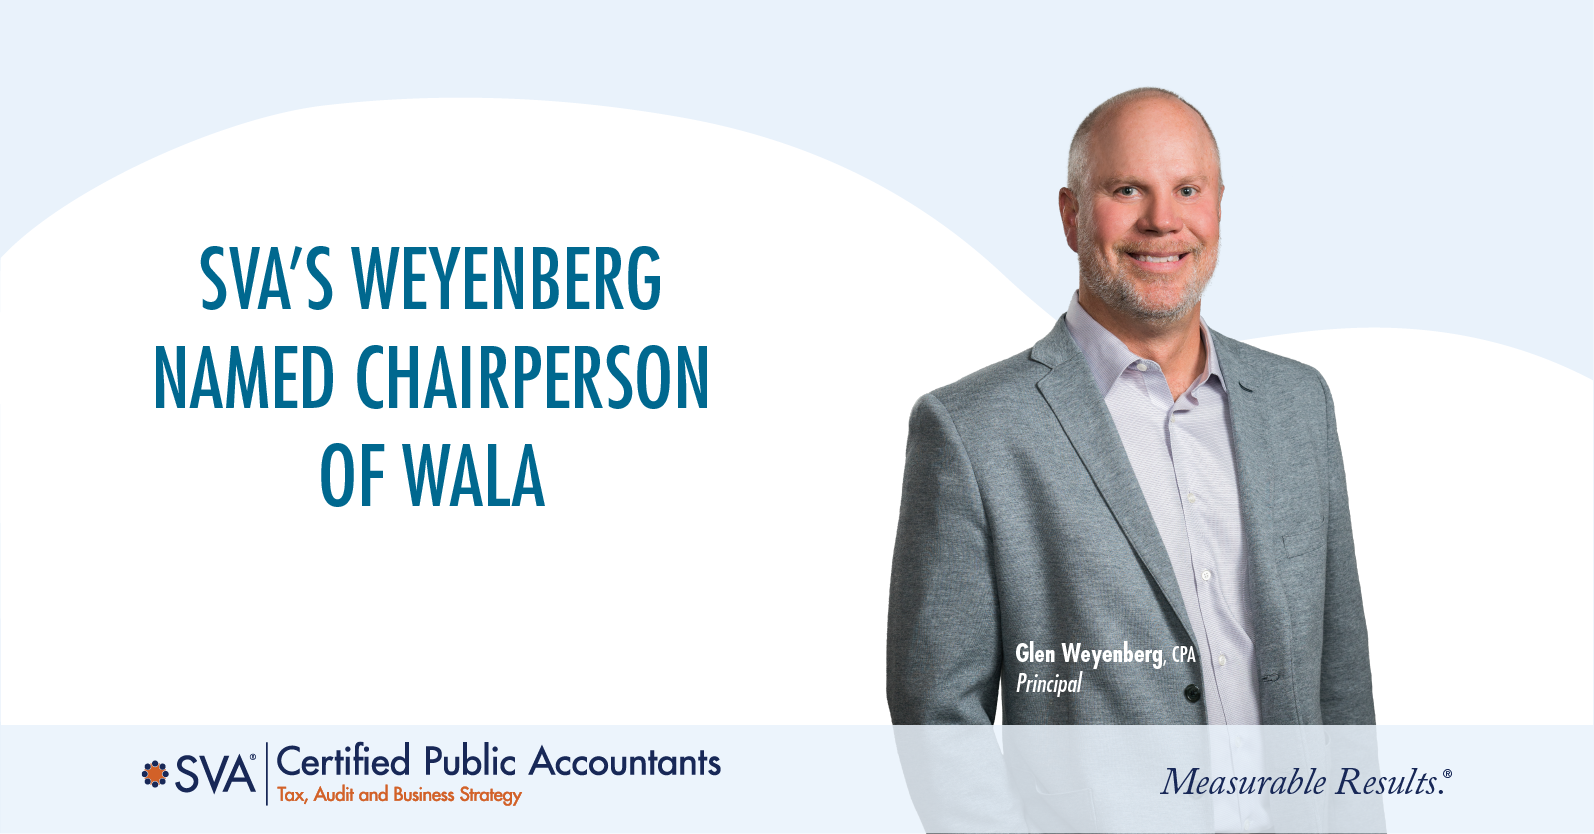 SVA’s Weyenberg Named Chairperson of WALA